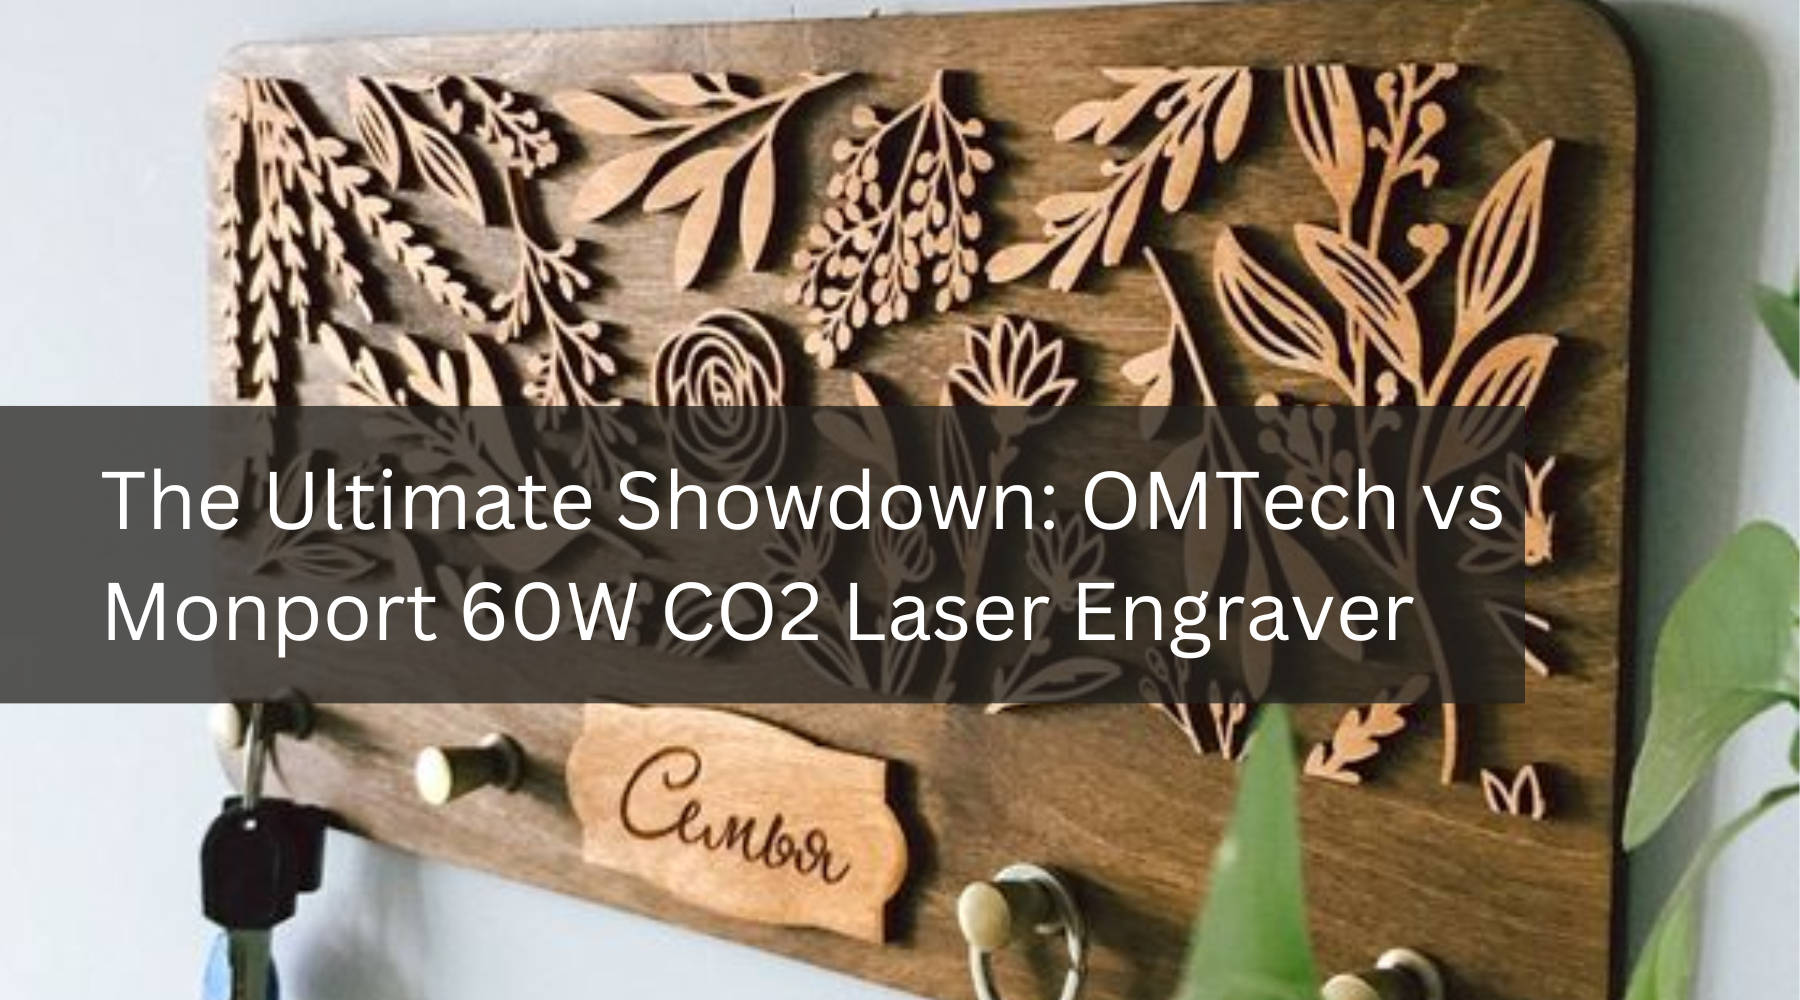 The Ultimate Showdown: OMTech vs Monport 60W CO2 Laser Engraver